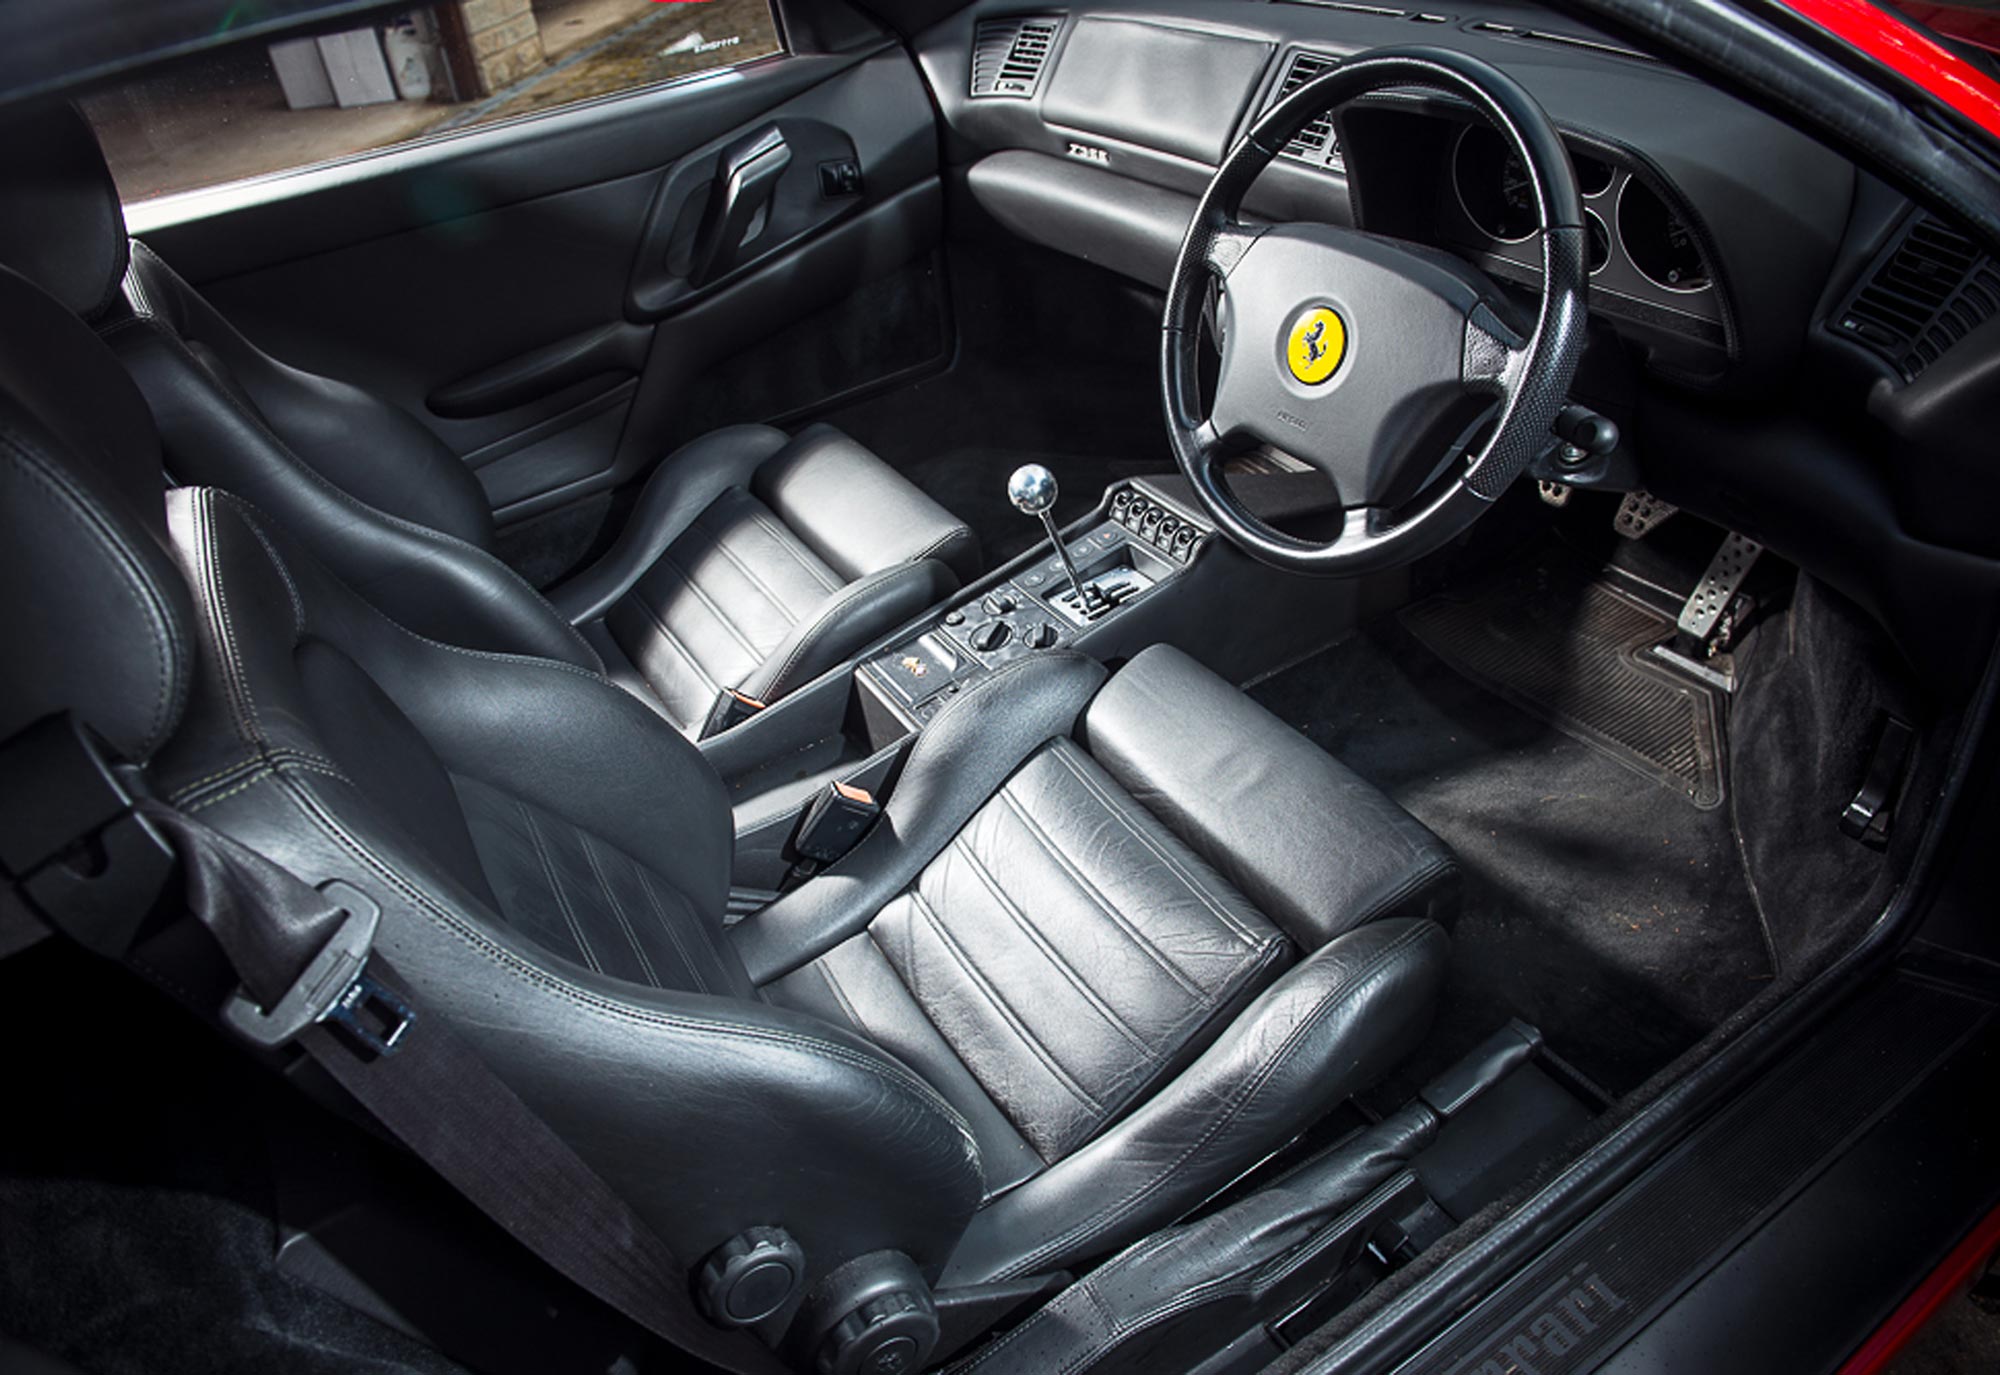 1998-Ferrari-F355-Berlinetta-interior-HR.jpg